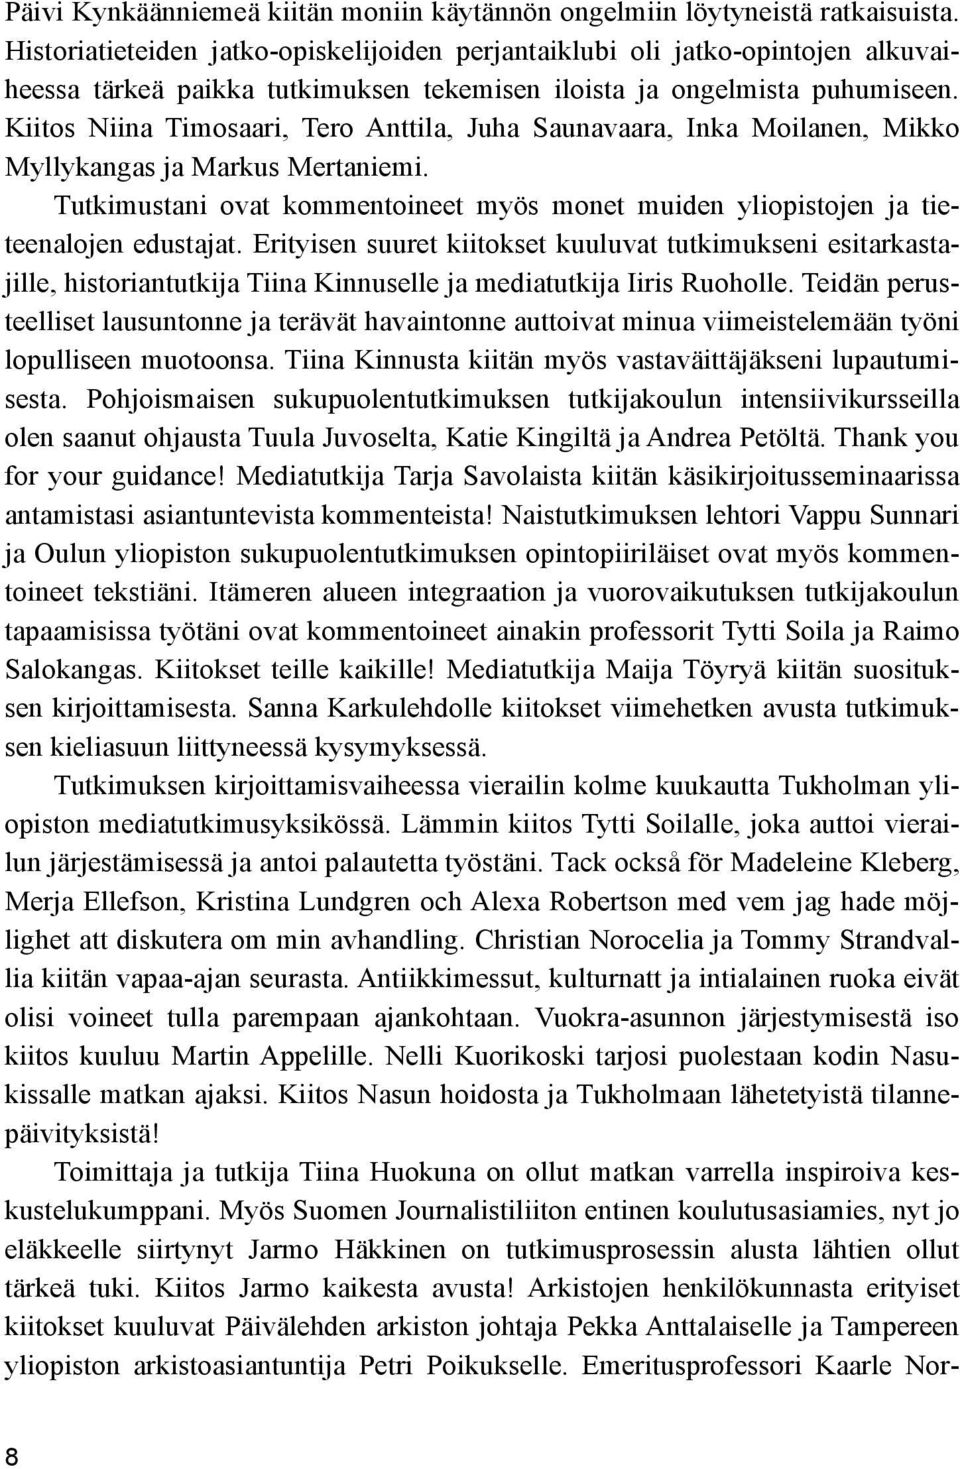 Kiitos Niina Timosaari, Tero Anttila, Juha Saunavaara, Inka Moilanen, Mikko Myllykangas ja Markus Mertaniemi. Tutkimustani ovat kommentoineet myös monet muiden yliopistojen ja tieteenalojen edustajat.